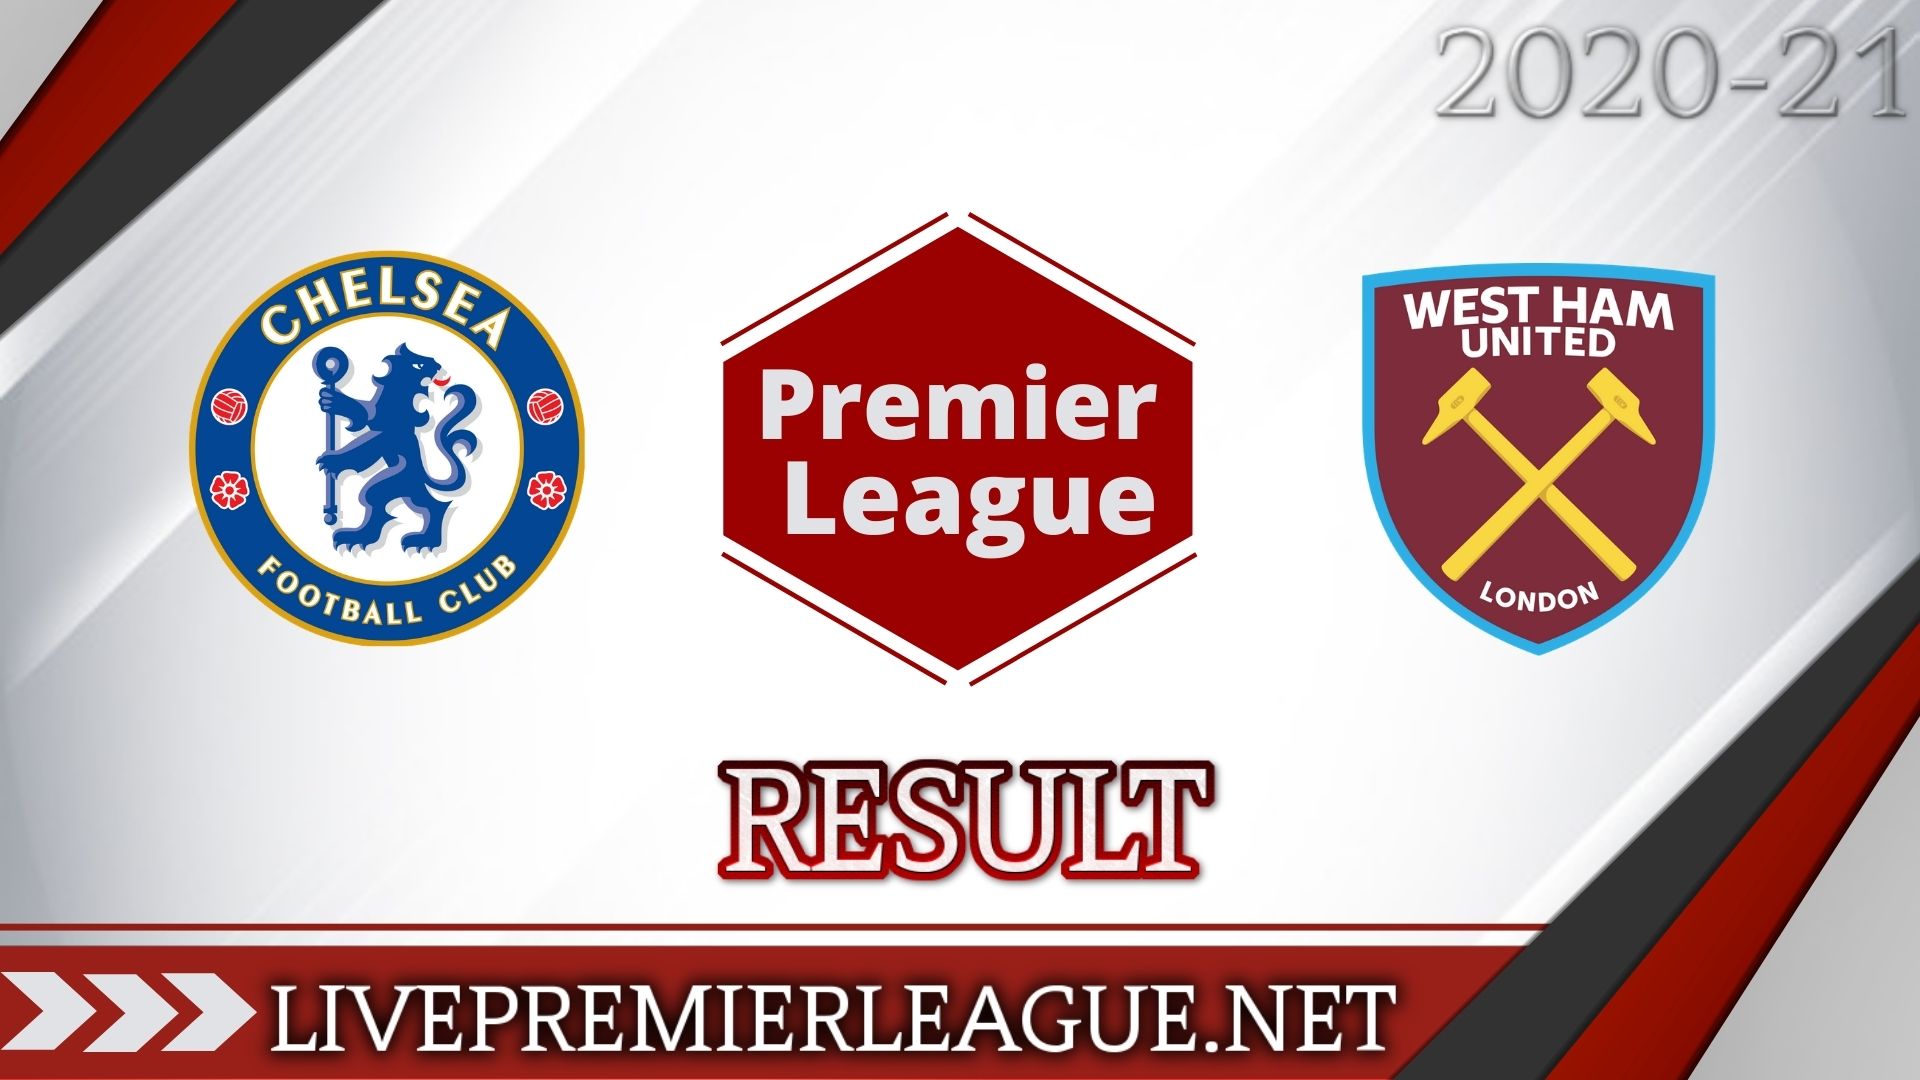 Chelsea Vs West Ham United | Week 14 Result 2020